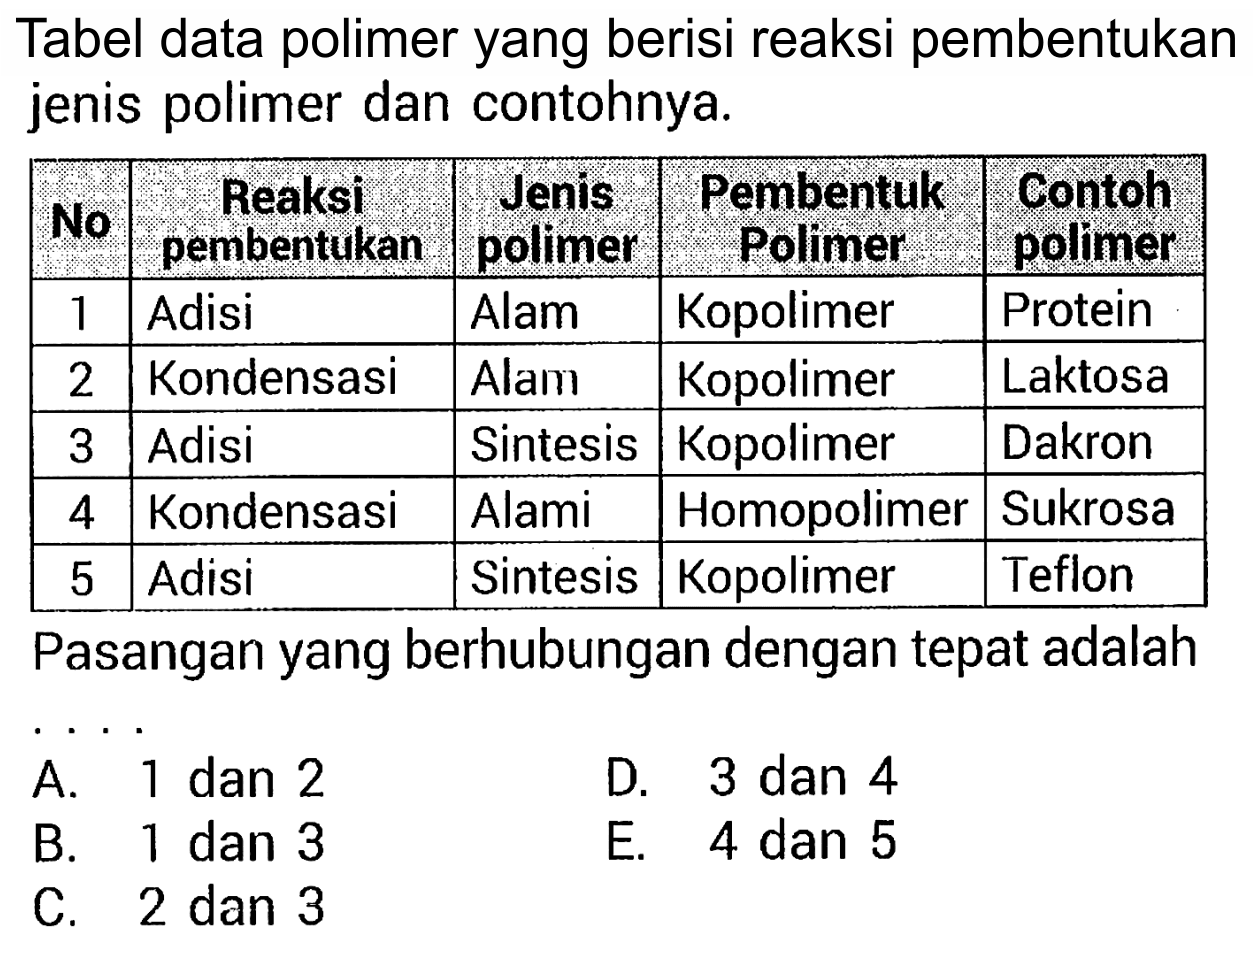 Tabel data polimer yang berisi reaksi pembentukan jenis polimer dan contohnya. 
No Reaksi pembentukan Jenis polimer Pembentuk Polimer Contoh Polimer 
1 Adisi Alam Kopolimer Protein 
2 Kondensasi Alam Kopolimer Laktosa 
3 Adisi Sintesis Kopolimer Dakron 
4 Kondensasi Alami Homopolimer Sukrosa 
5 Adisi Sintesis Kopolimer Teflon 
Pasangan yang berhubungan dengan tepat adalah .... 
A. 1 dan 2 D. 3 dan 4 B. 1 dan 3 E. 4 dan 5 C. 2 dan 3